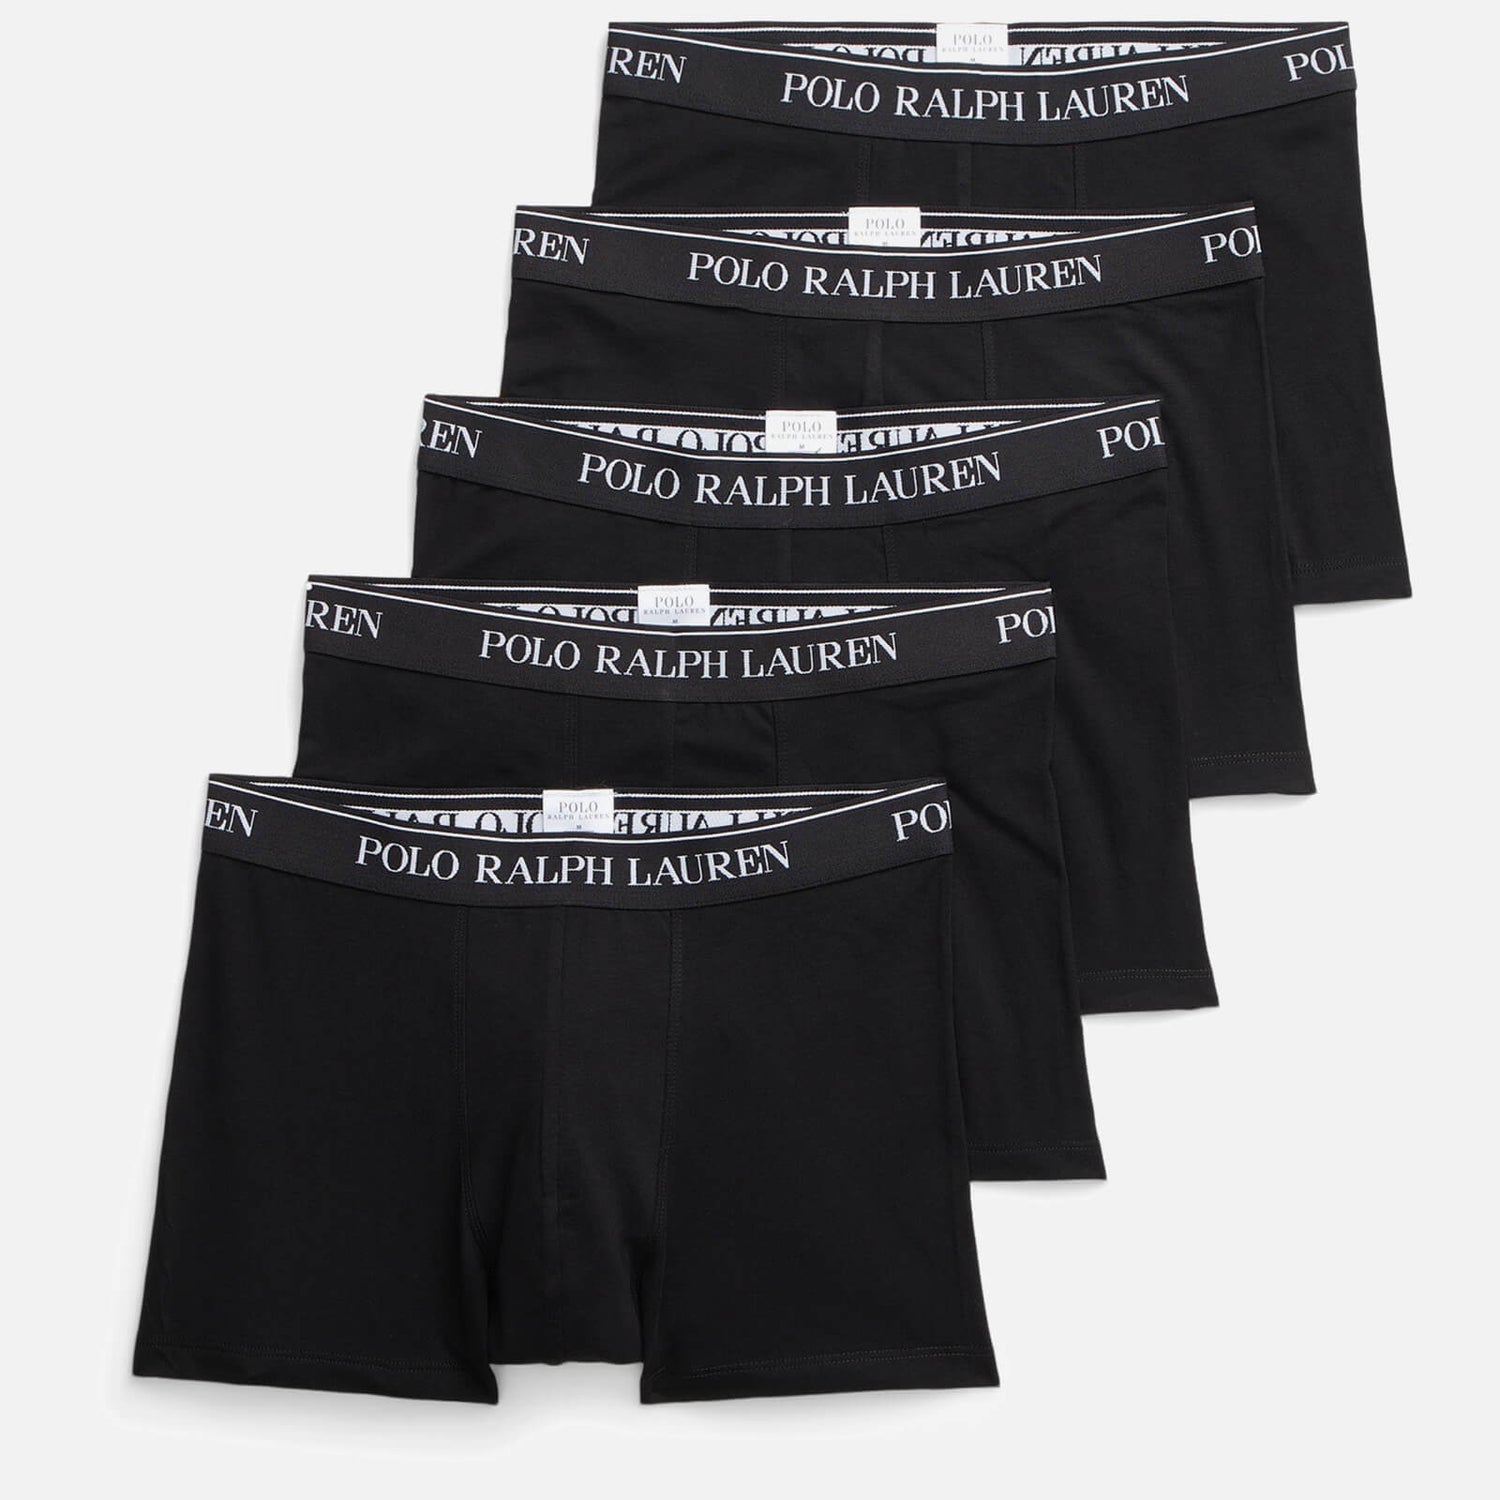 Polo Ralph Lauren Men's Classic 5 Pack Trunks - Black - S